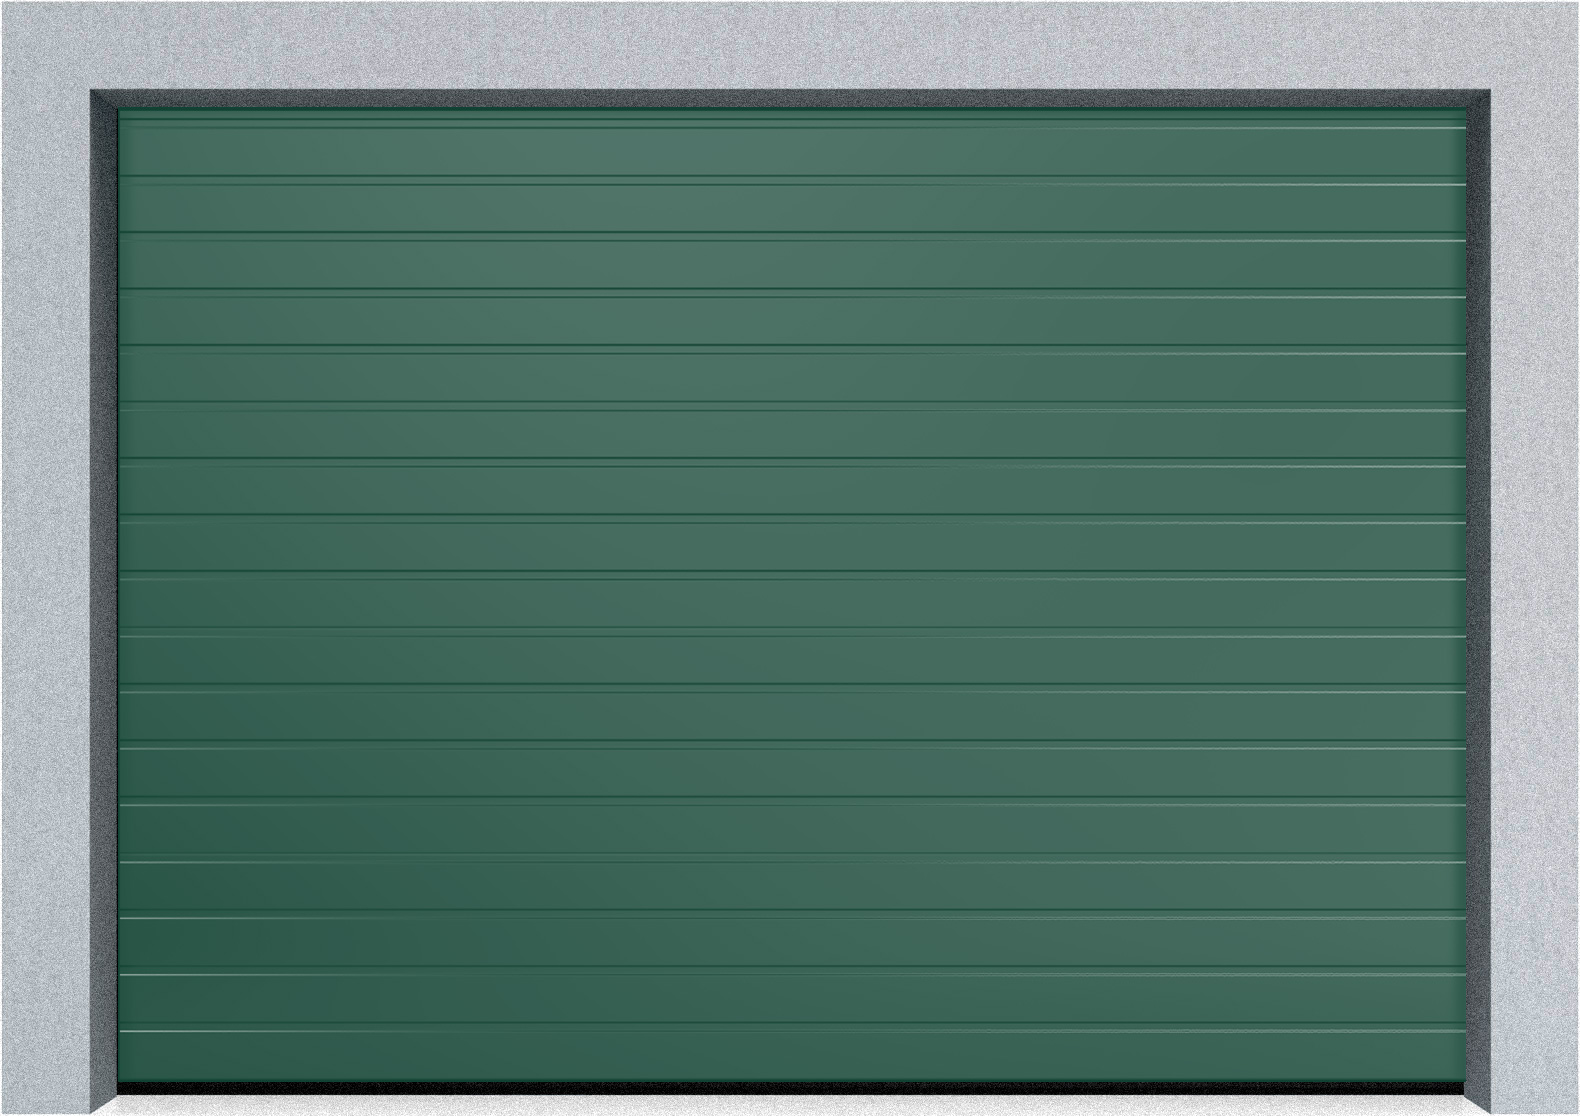  Автоматические Секционные гаражные ворота Hormann LTE 42 2250х1875 S-гофр, Микроволна стандартные цвета, фото 3 